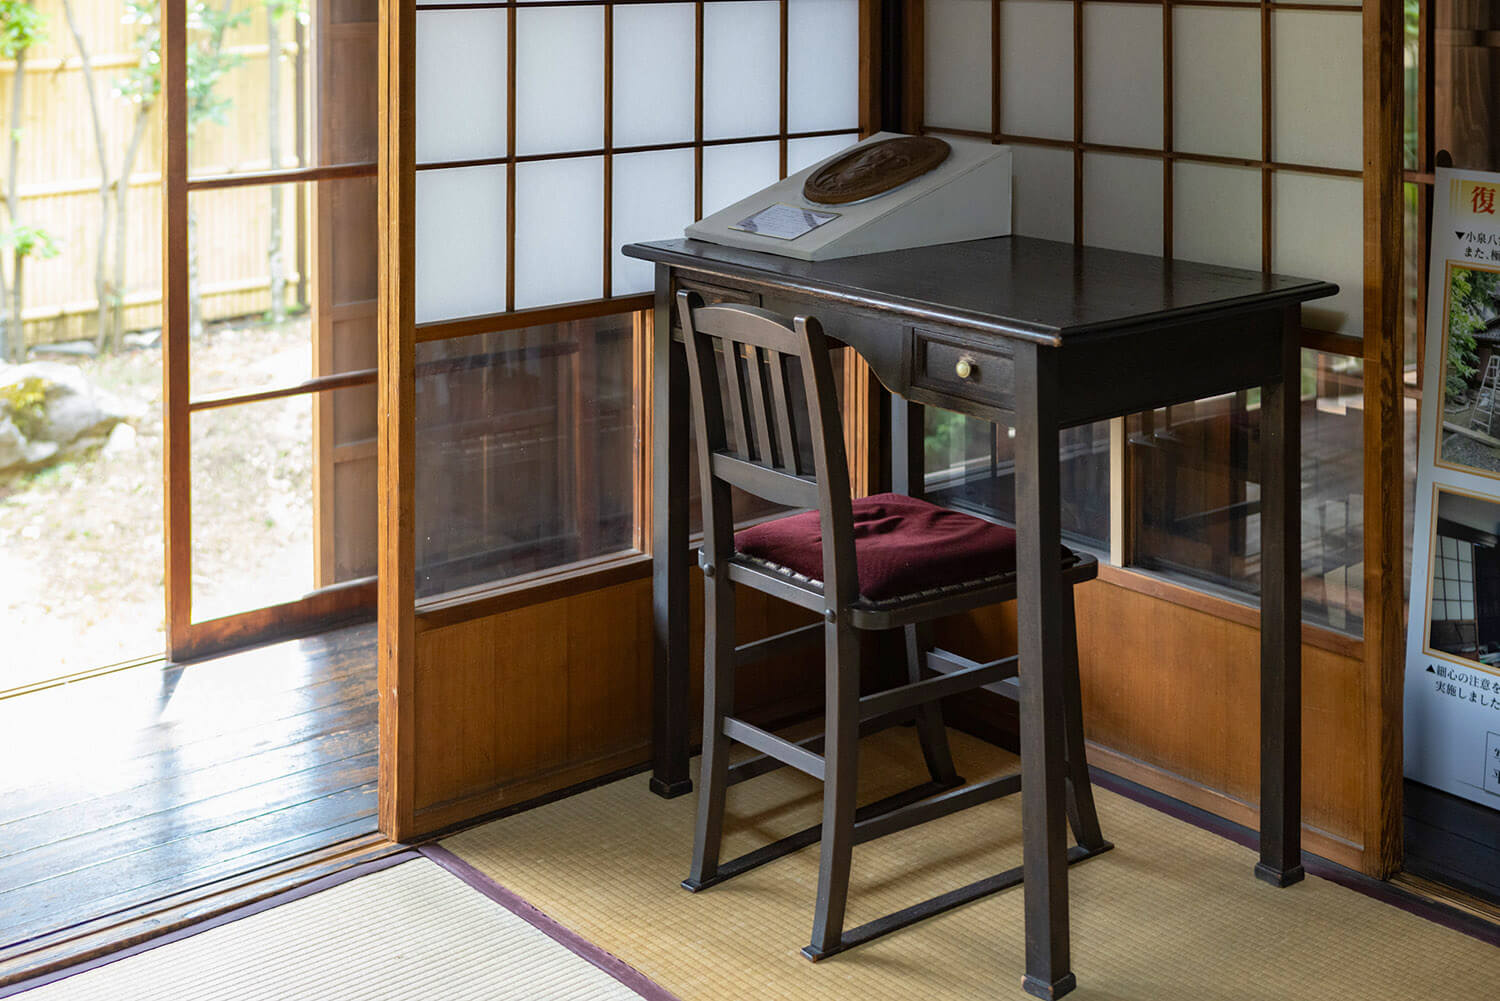 原稿が書きやすいことから机と椅子を使用するも、その他の調度品はすべて日本式を採用していた